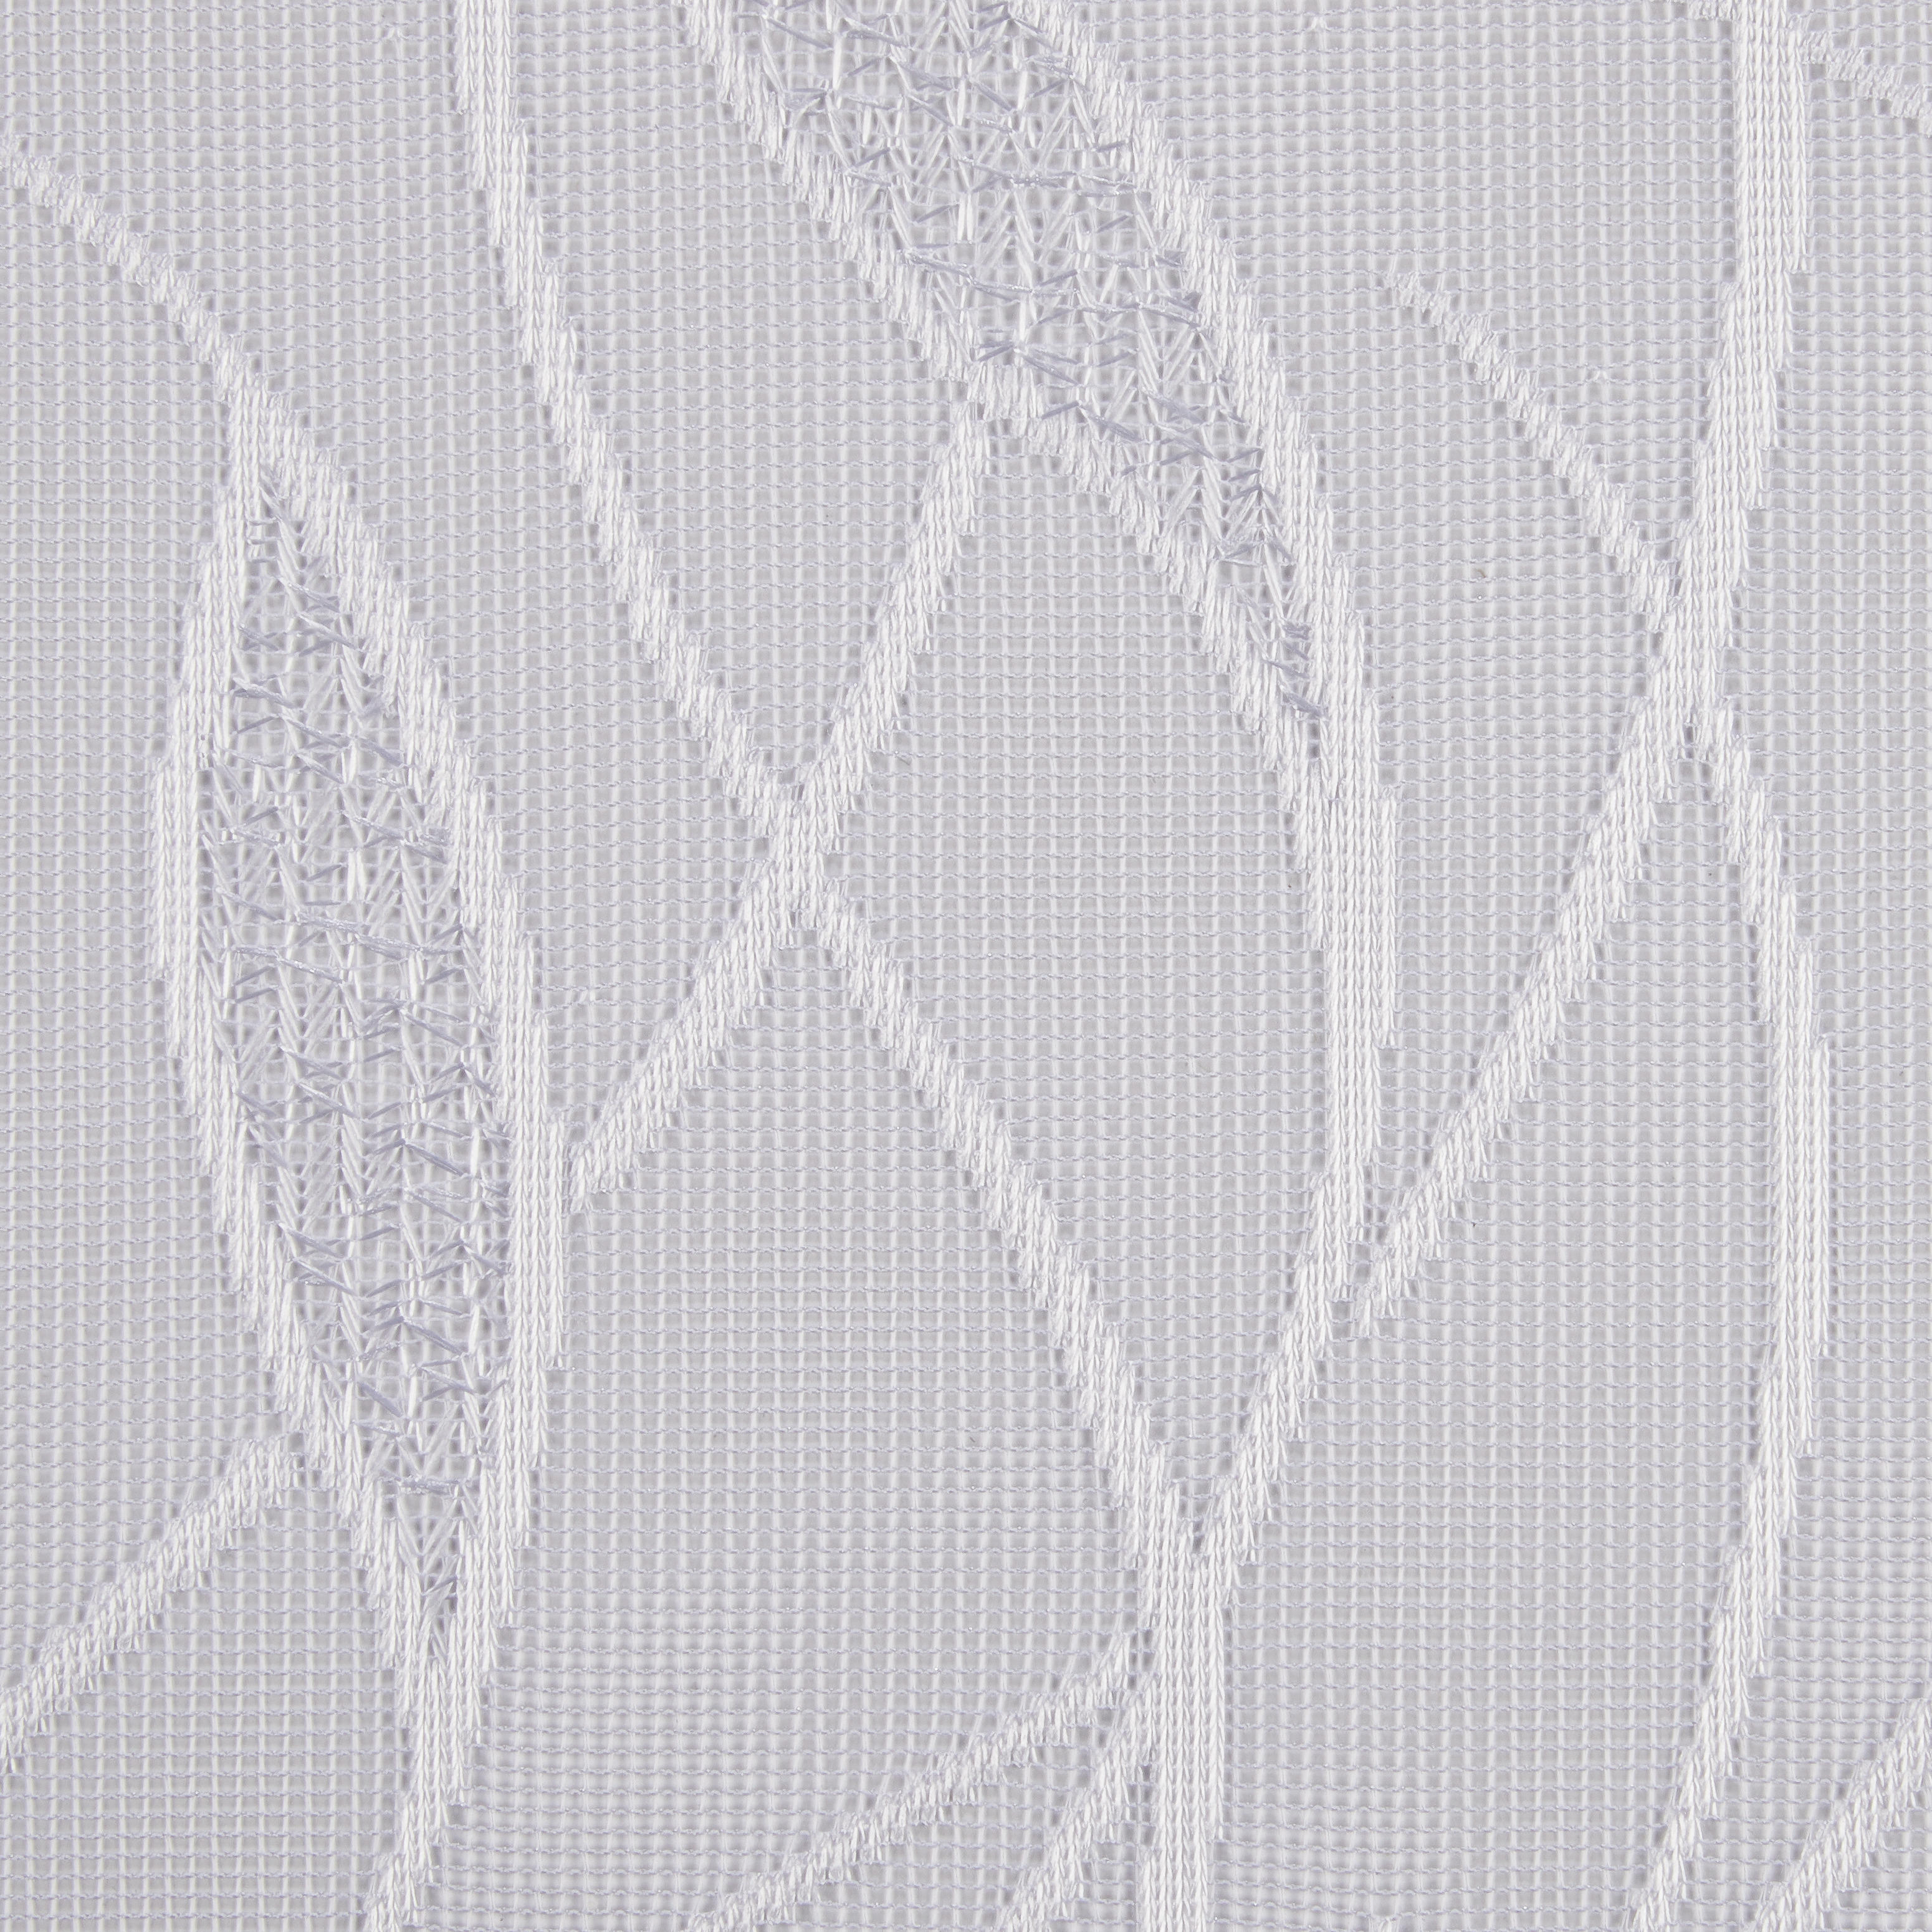 Fertigstore Linz Weiß B/l: Ca. 450x245 Cm Linz - weiß (450,00/245,00cm)